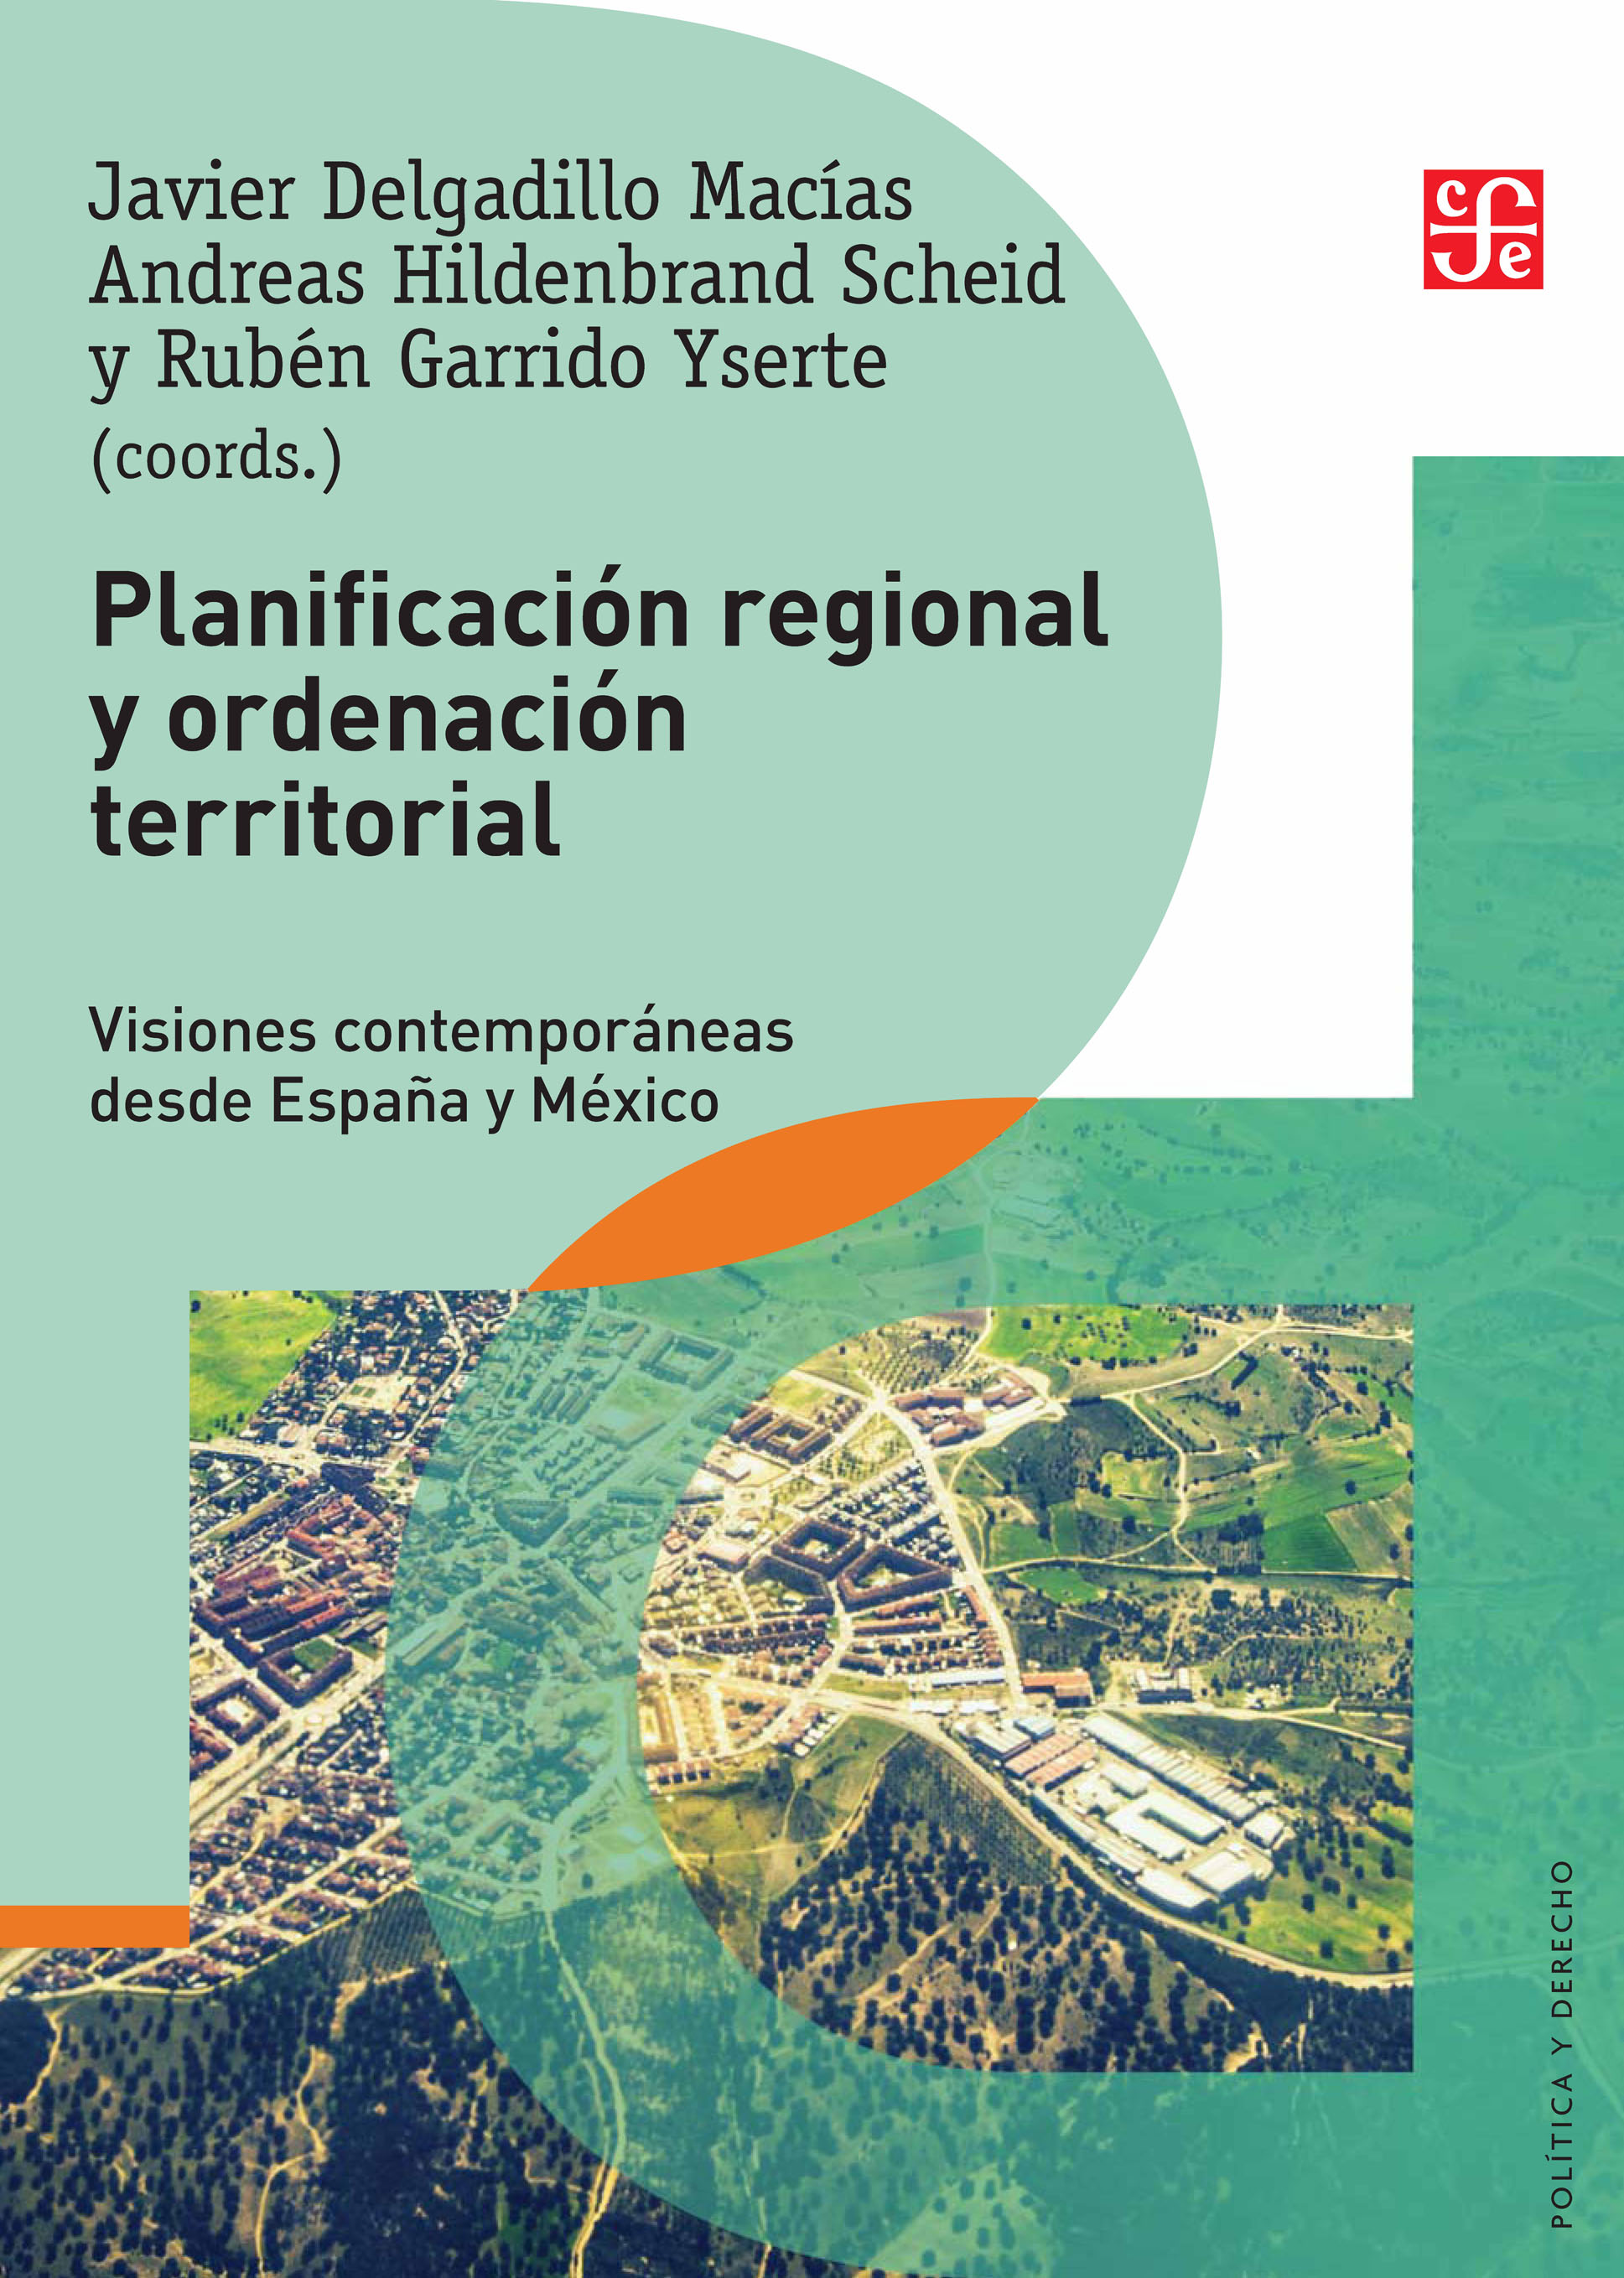 Planificación regional y ordenación territorial